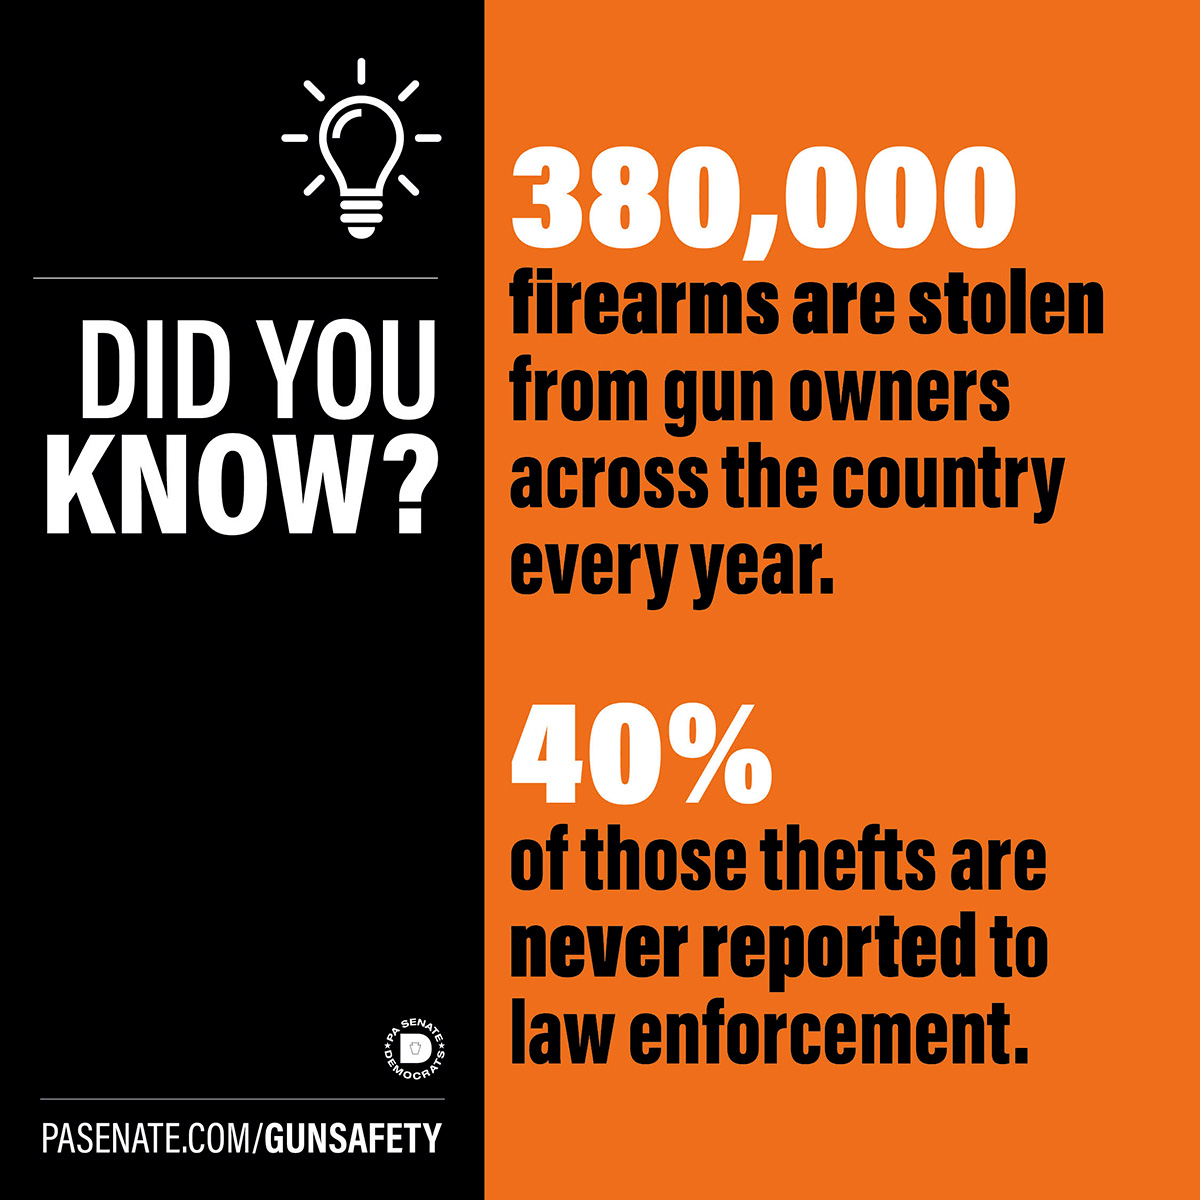 알고 계셨나요? 매년 미국 전역에서 총기 소유자가 도난당하는 총기 수는 38만 대에 달합니다.